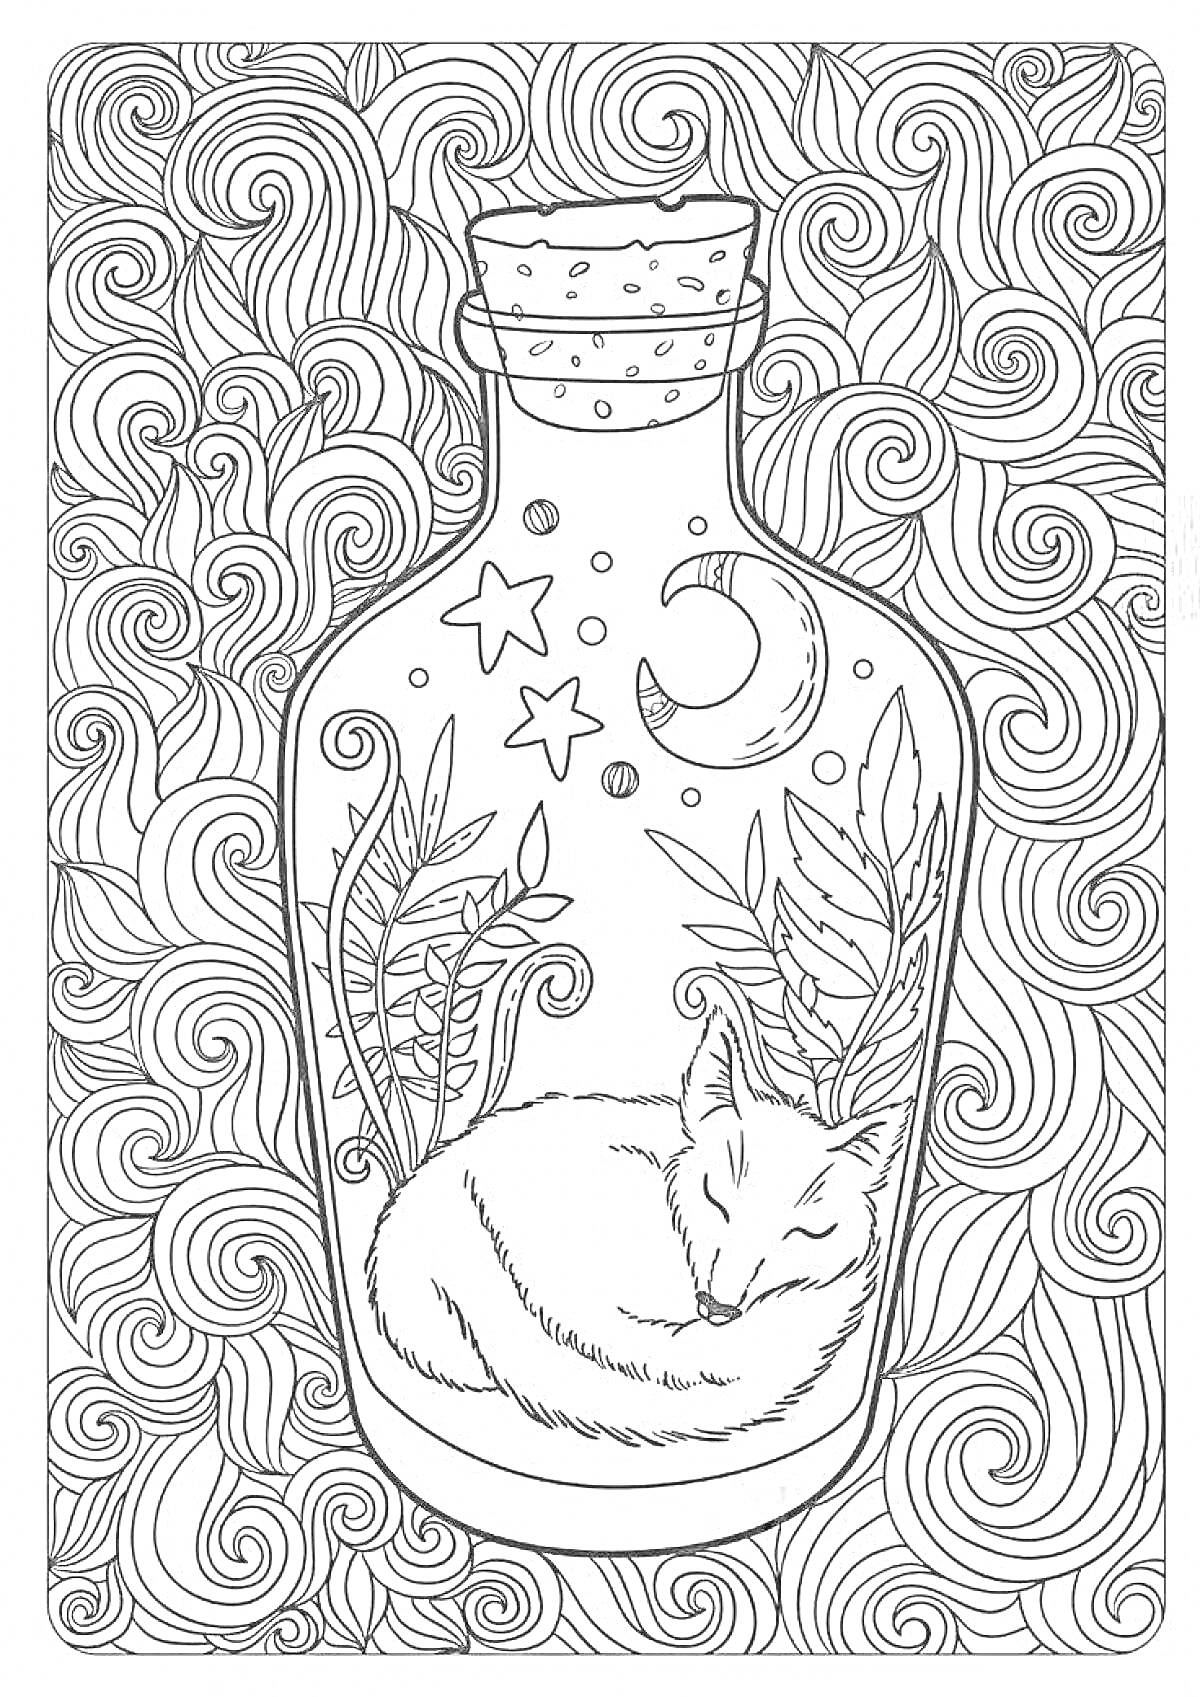 Раскраска Лиса, спящая в бутылке с растениями, звездами и луной, на фоне из завитков